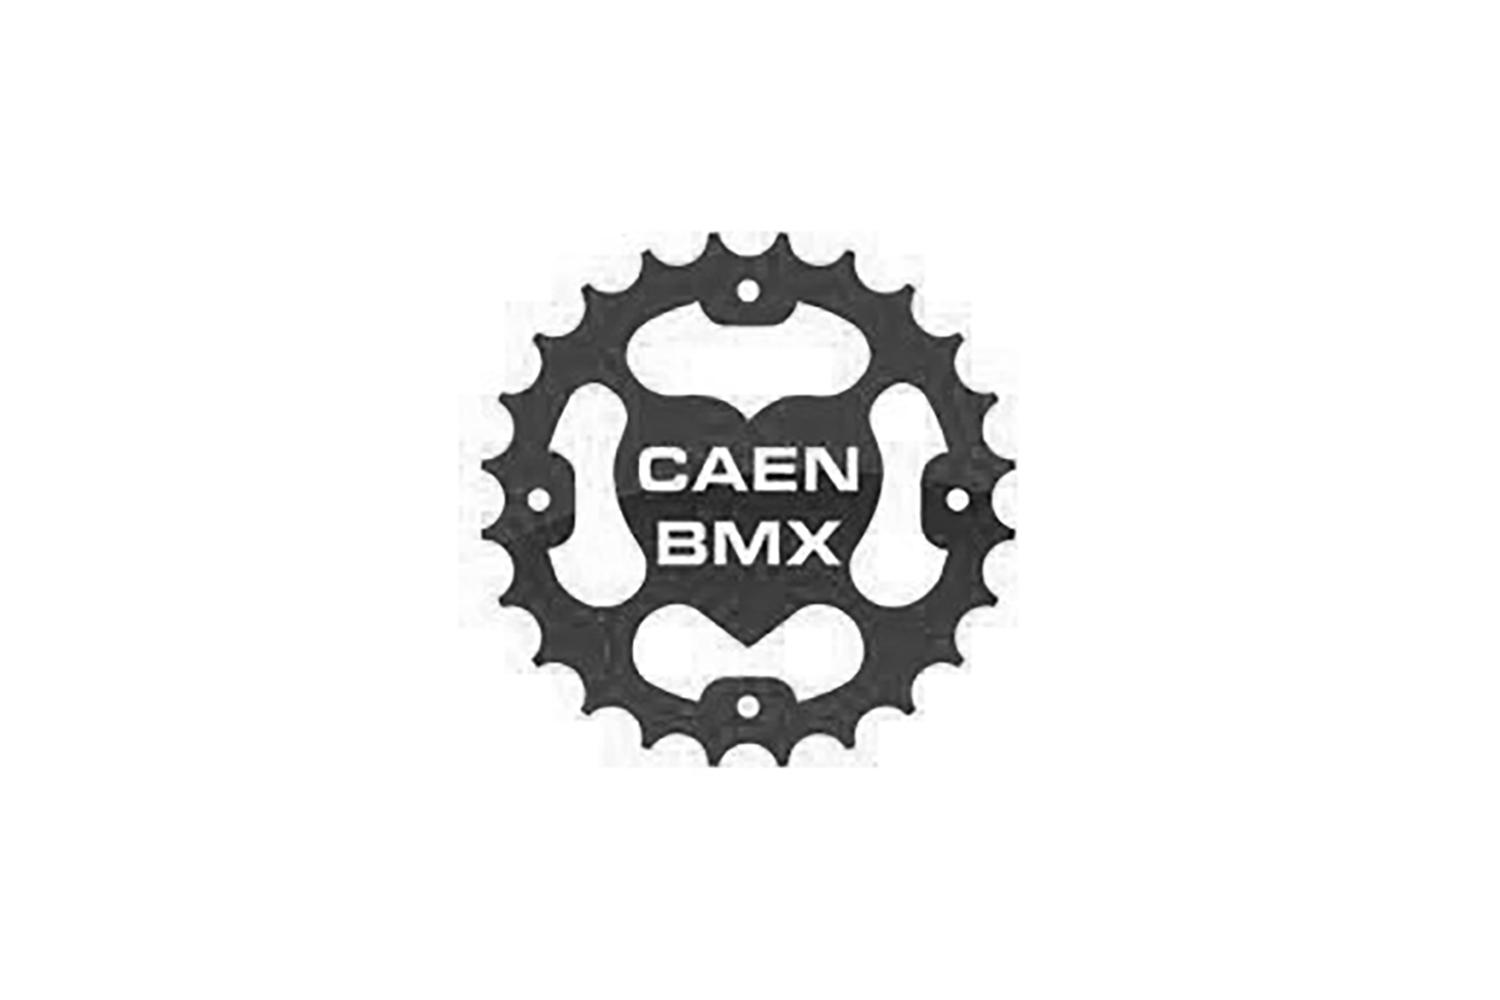 Caen BMX